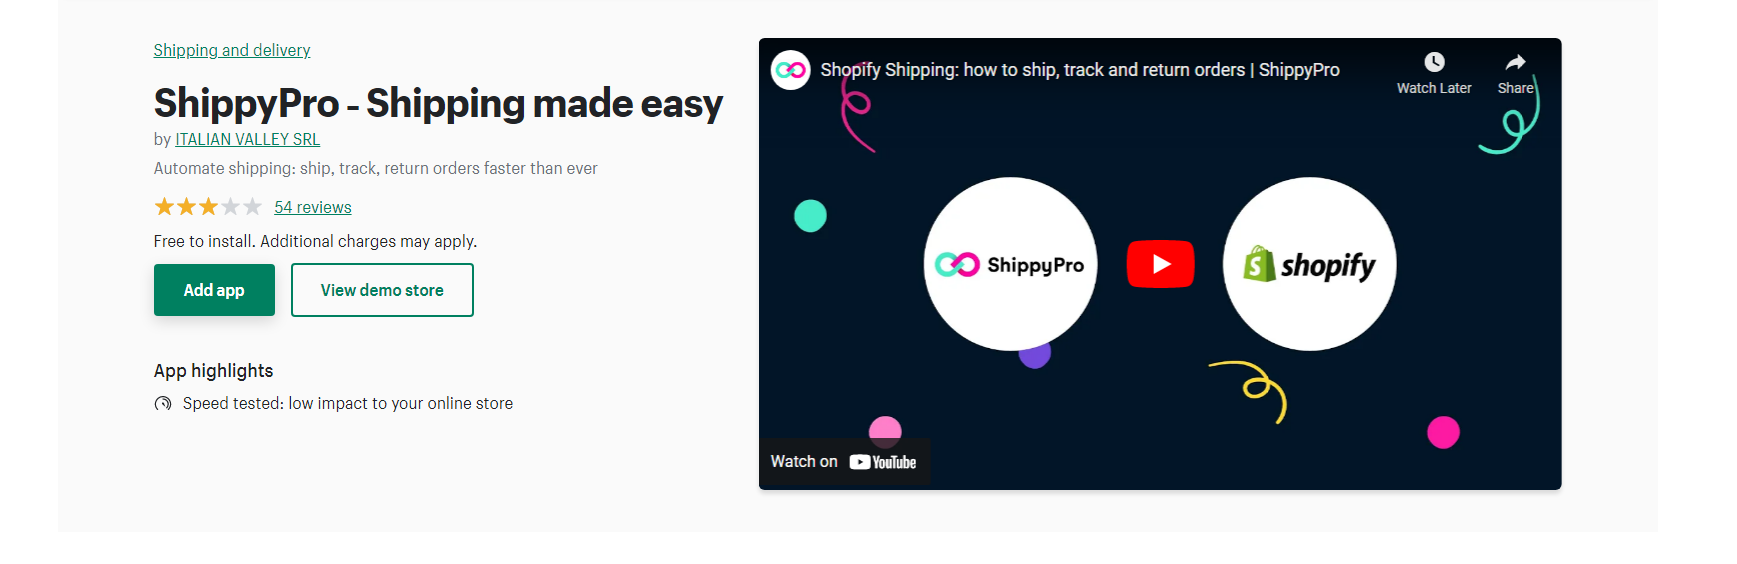 ShippyPro - Shopify Returns Apps